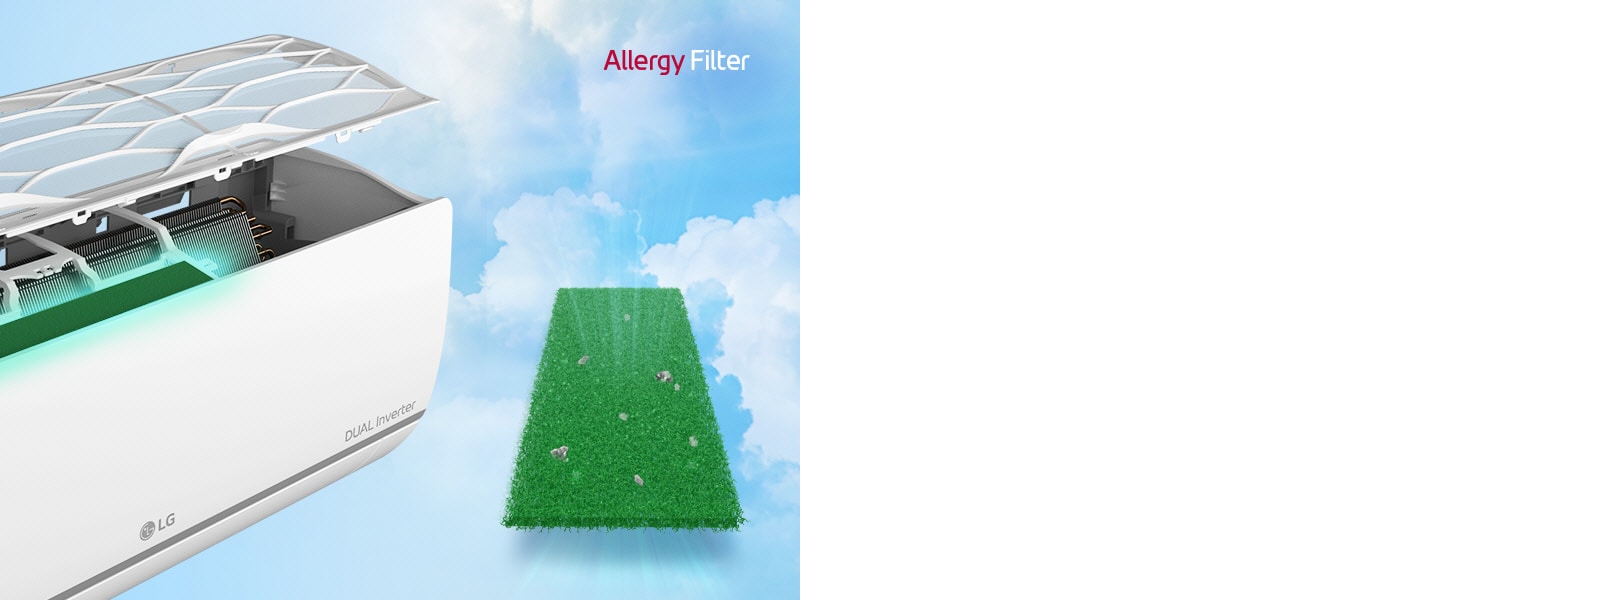 Pohľad zboku na klimatizáciu. Nad ňou plávajú filtre, aby bolo vidno filter alergénov nainštalovaný vnútri. Vedľa zariadenia sa nachádza celý zelený filter alergénov, v ktorom sú zachytené roztoče. V pravom hornom rohu sa nachádza logo Allergy Filter.